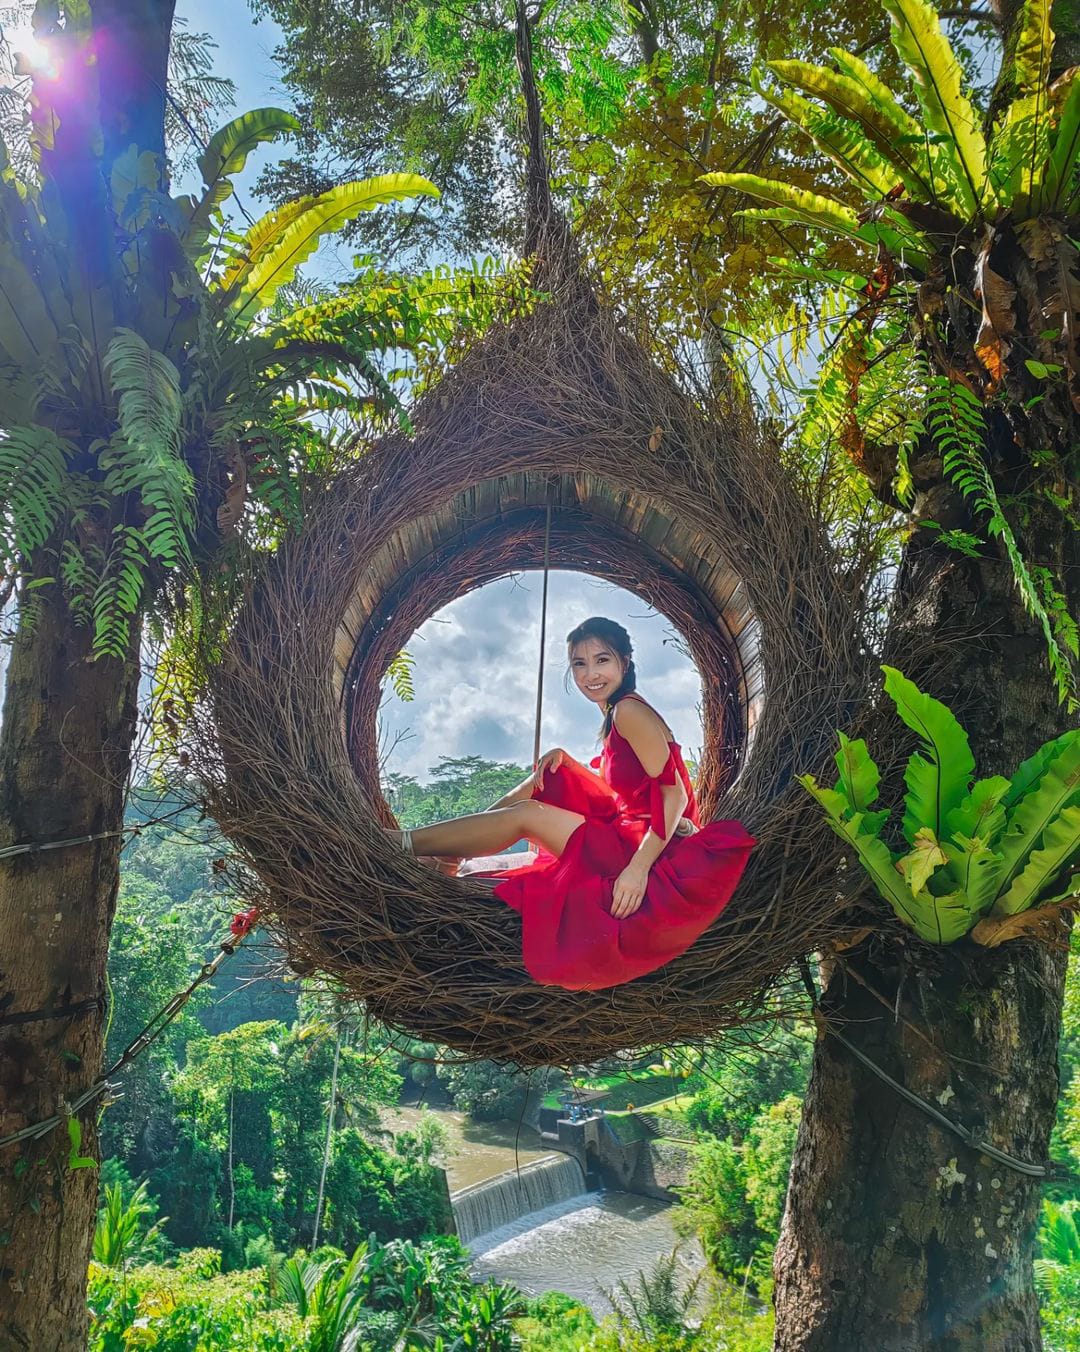 烏布 Bali Swing 叢林鞦韆體驗